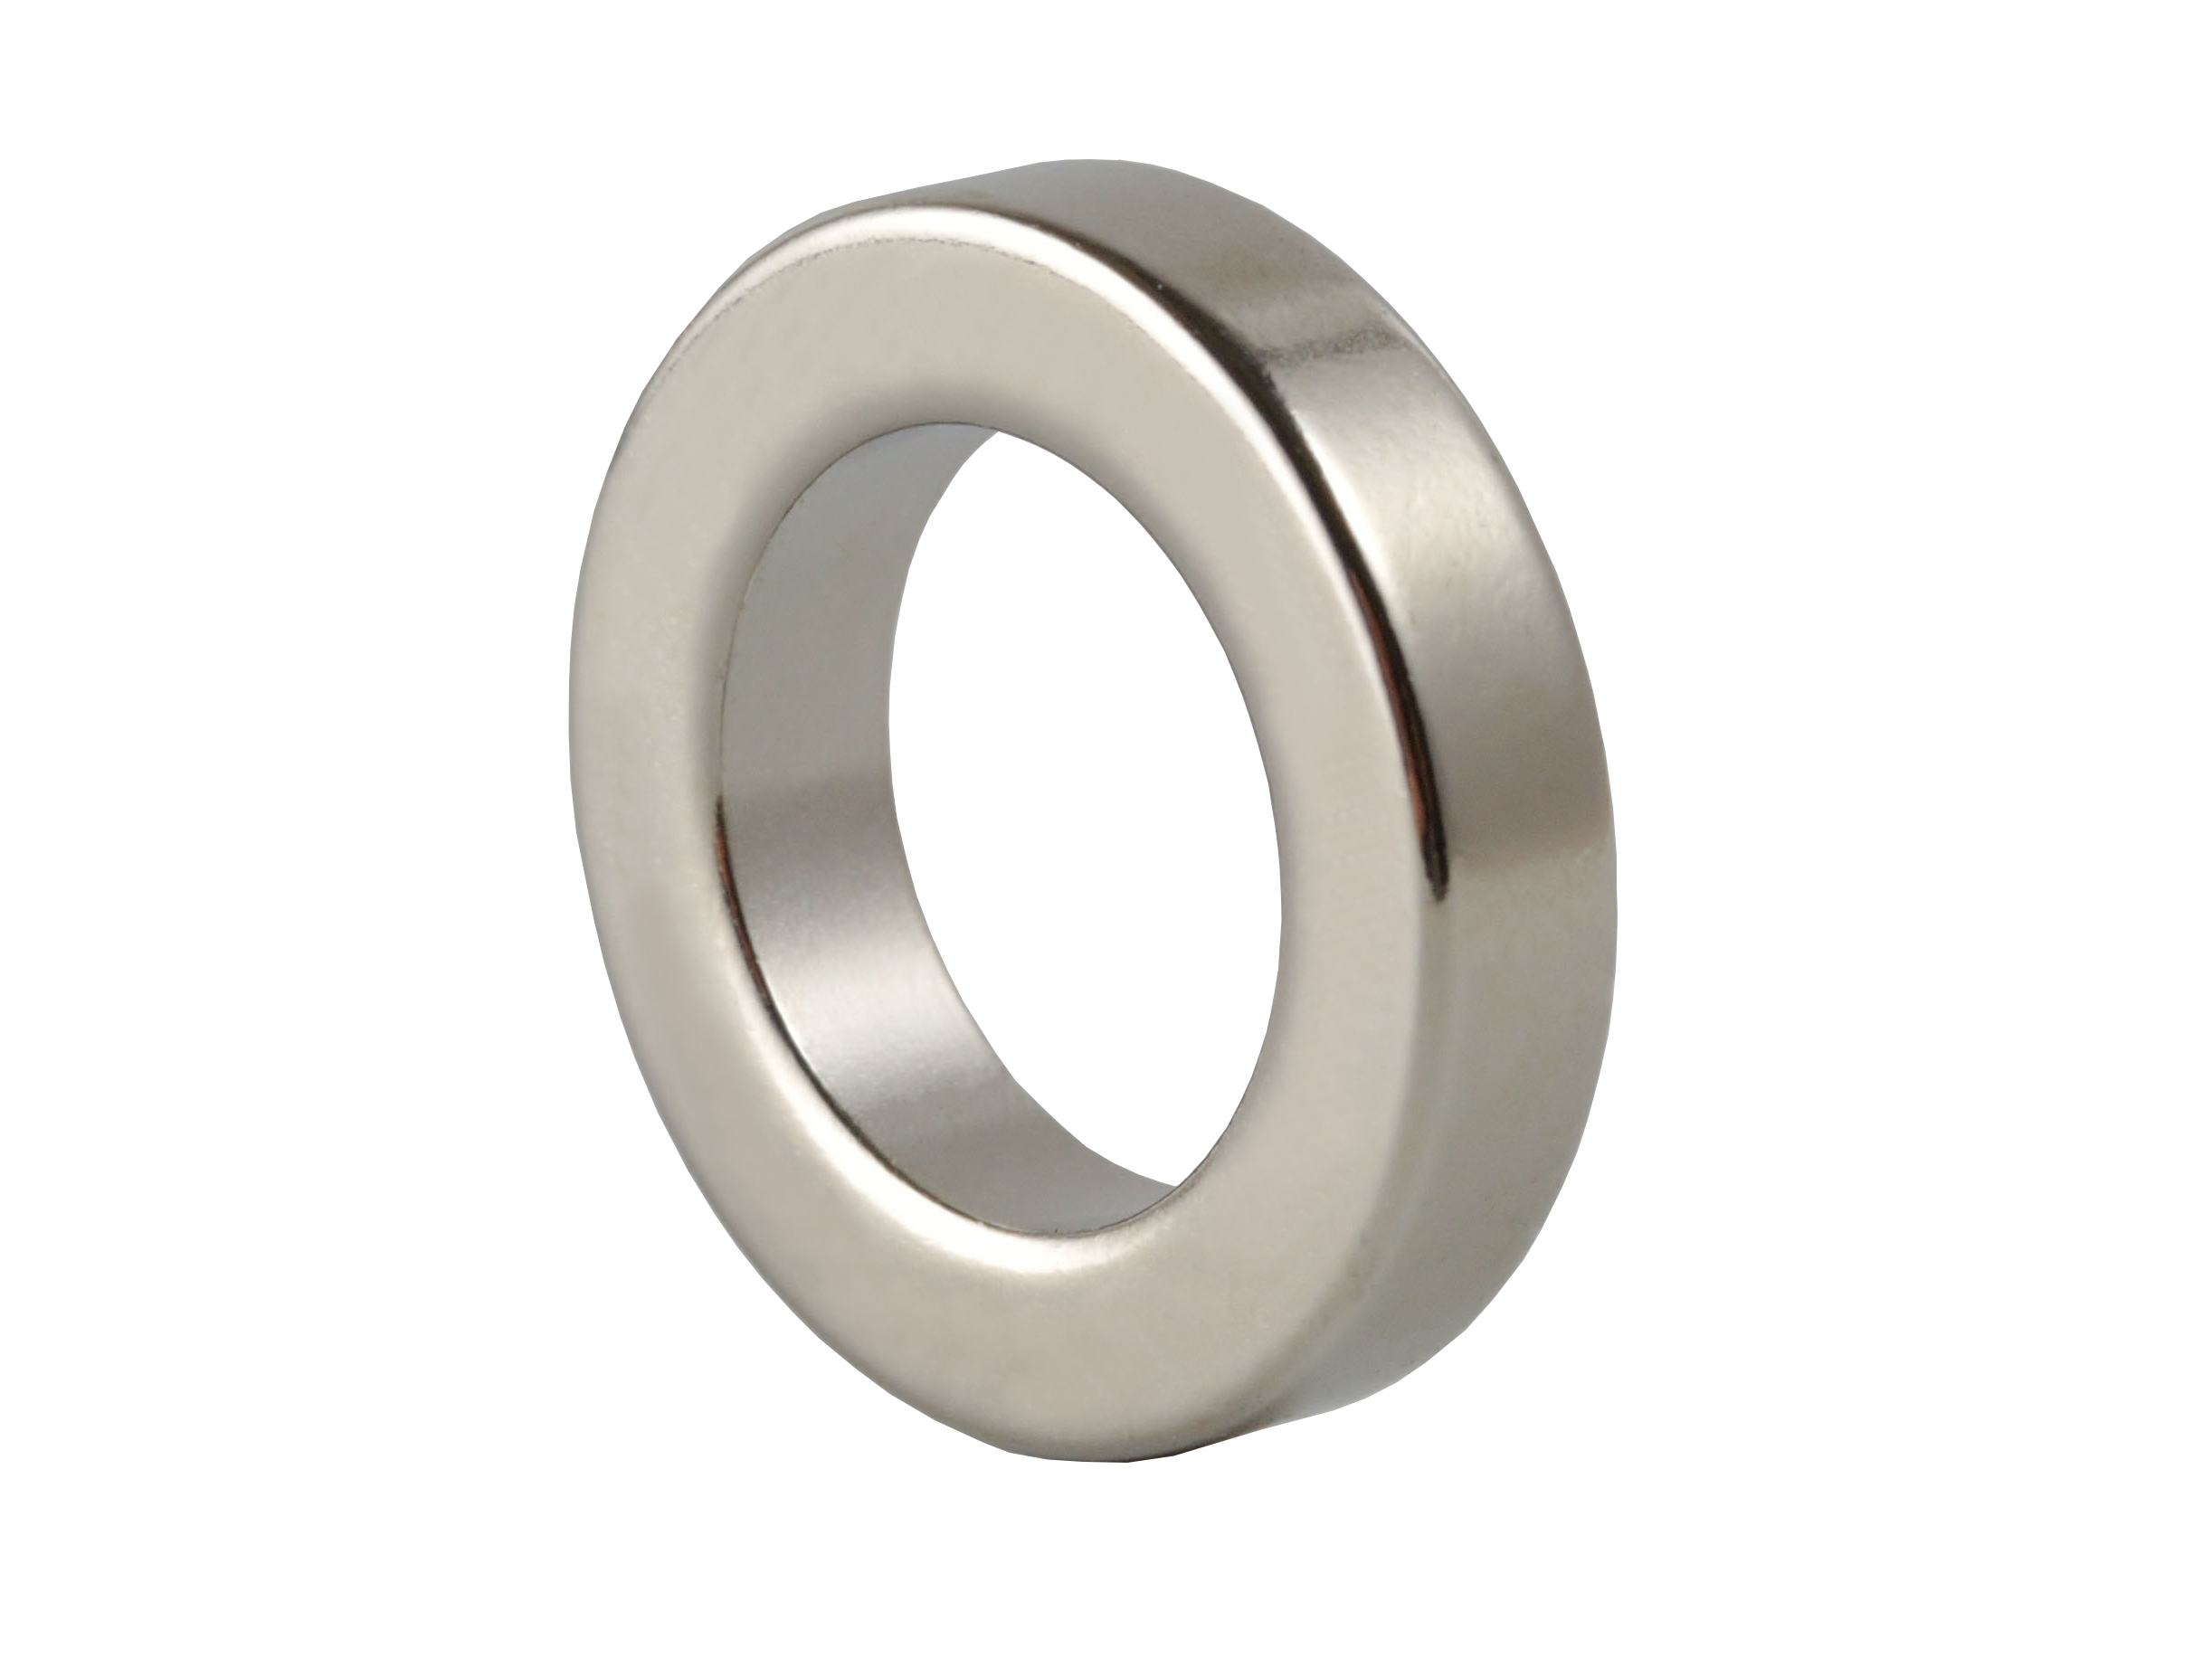 Ring‑Shaped Neodymium Magnet (NOR381) 